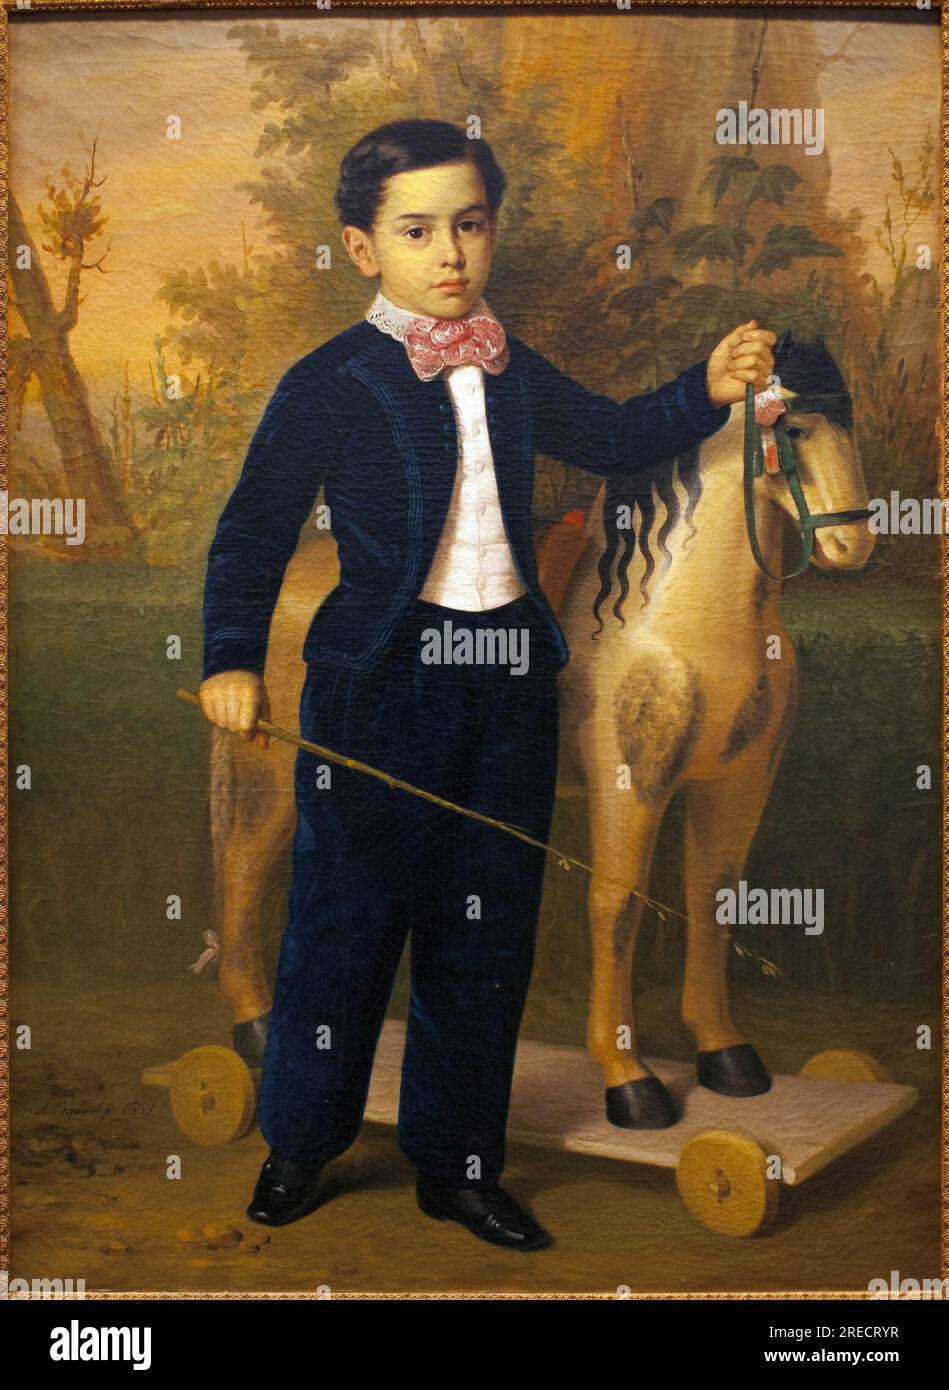 Portrait d'un petit garcon avec un cheval de bois. Peinture de Antonio Maria Esquivel (1806-1857), huile sur toile, ves 1851. Museo delle Belle Arti di Siviglia, Espagne. Foto Stock